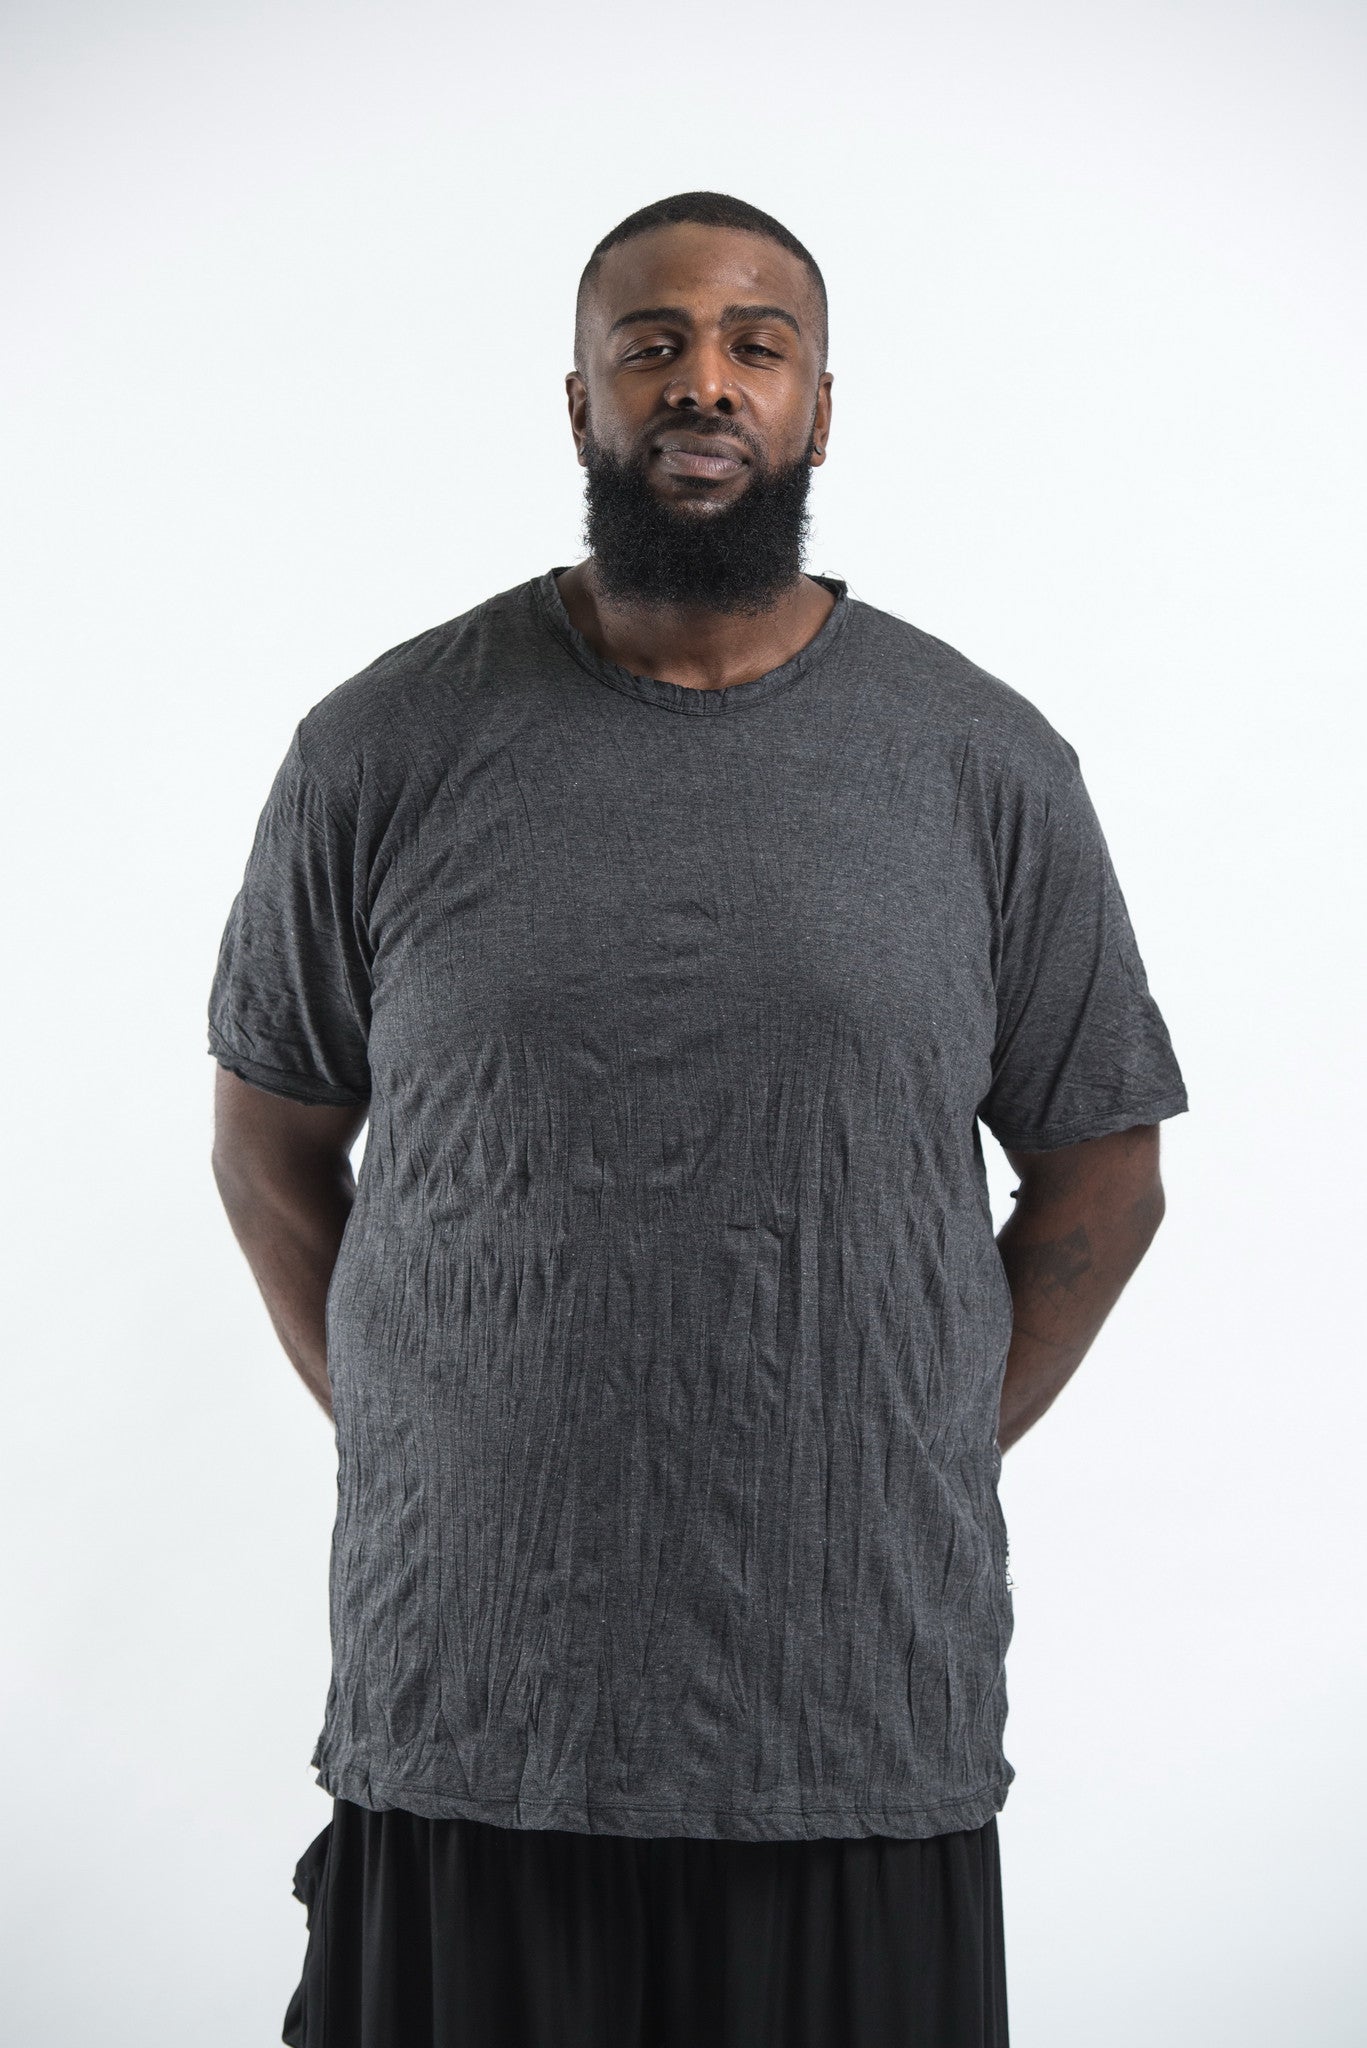 skab Ombord malt Plus Size Sure Design Men's Blank T-Shirt Black – Sure Design Wholesale